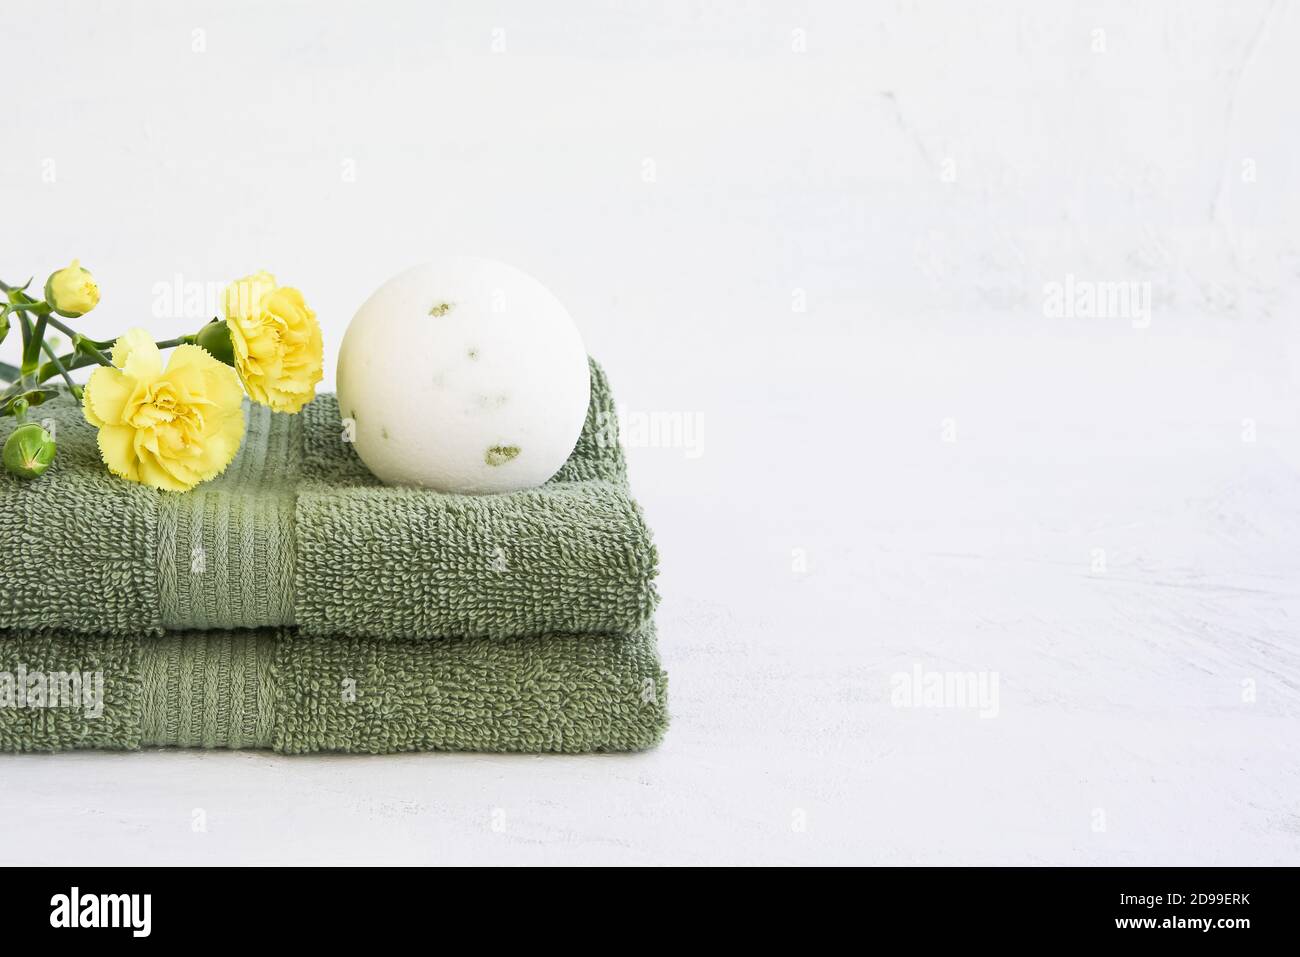 SPA-Konzept. Weiße Badebombe und zwei grüne Handtücher mit gelben Nelkenblumen auf weißem Hintergrund. Platz für Text kopieren Stockfoto